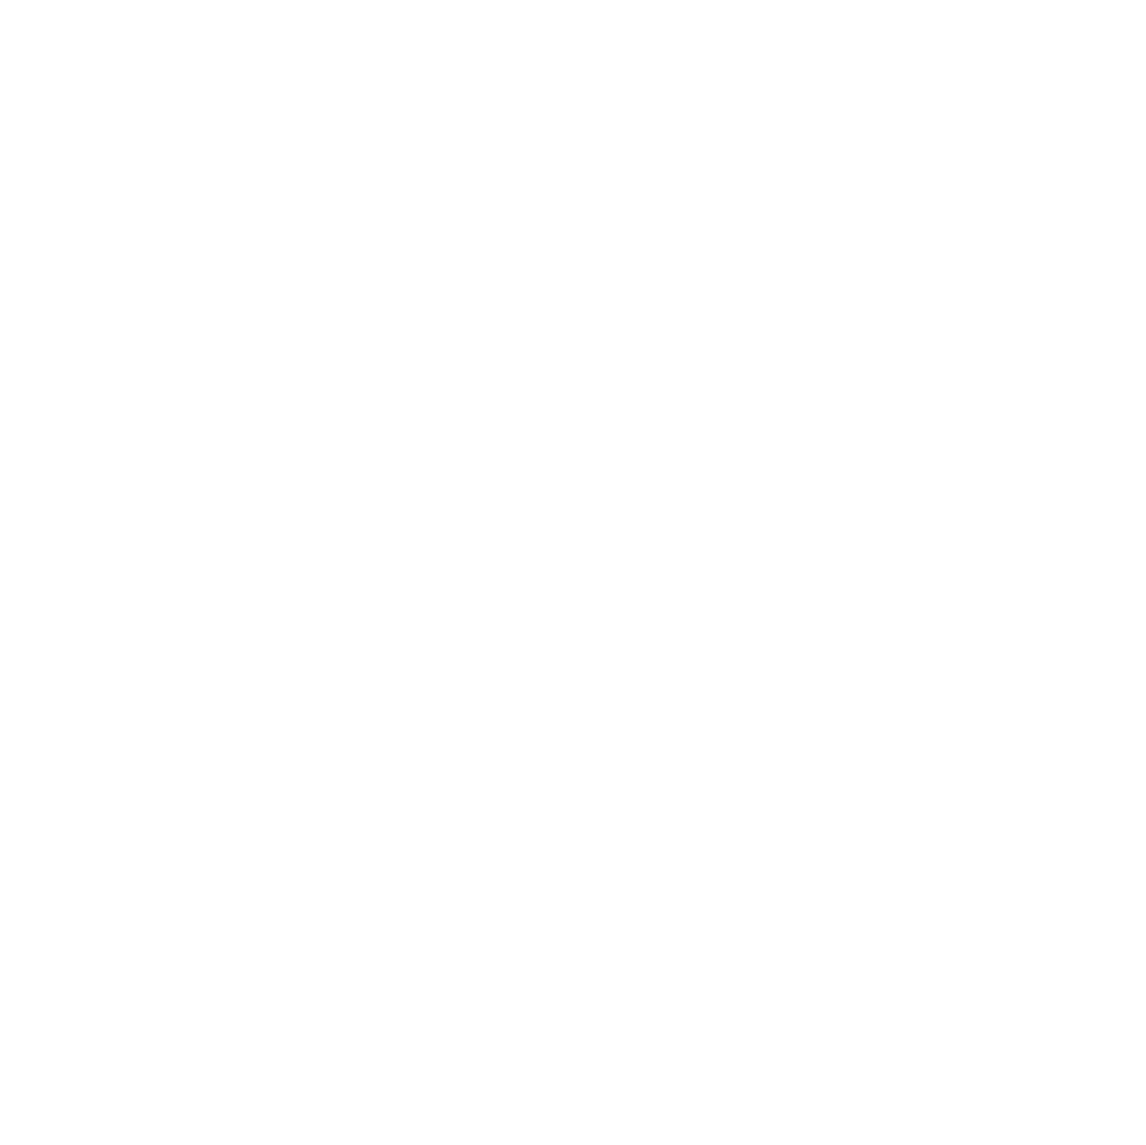 HOPE HOUSE